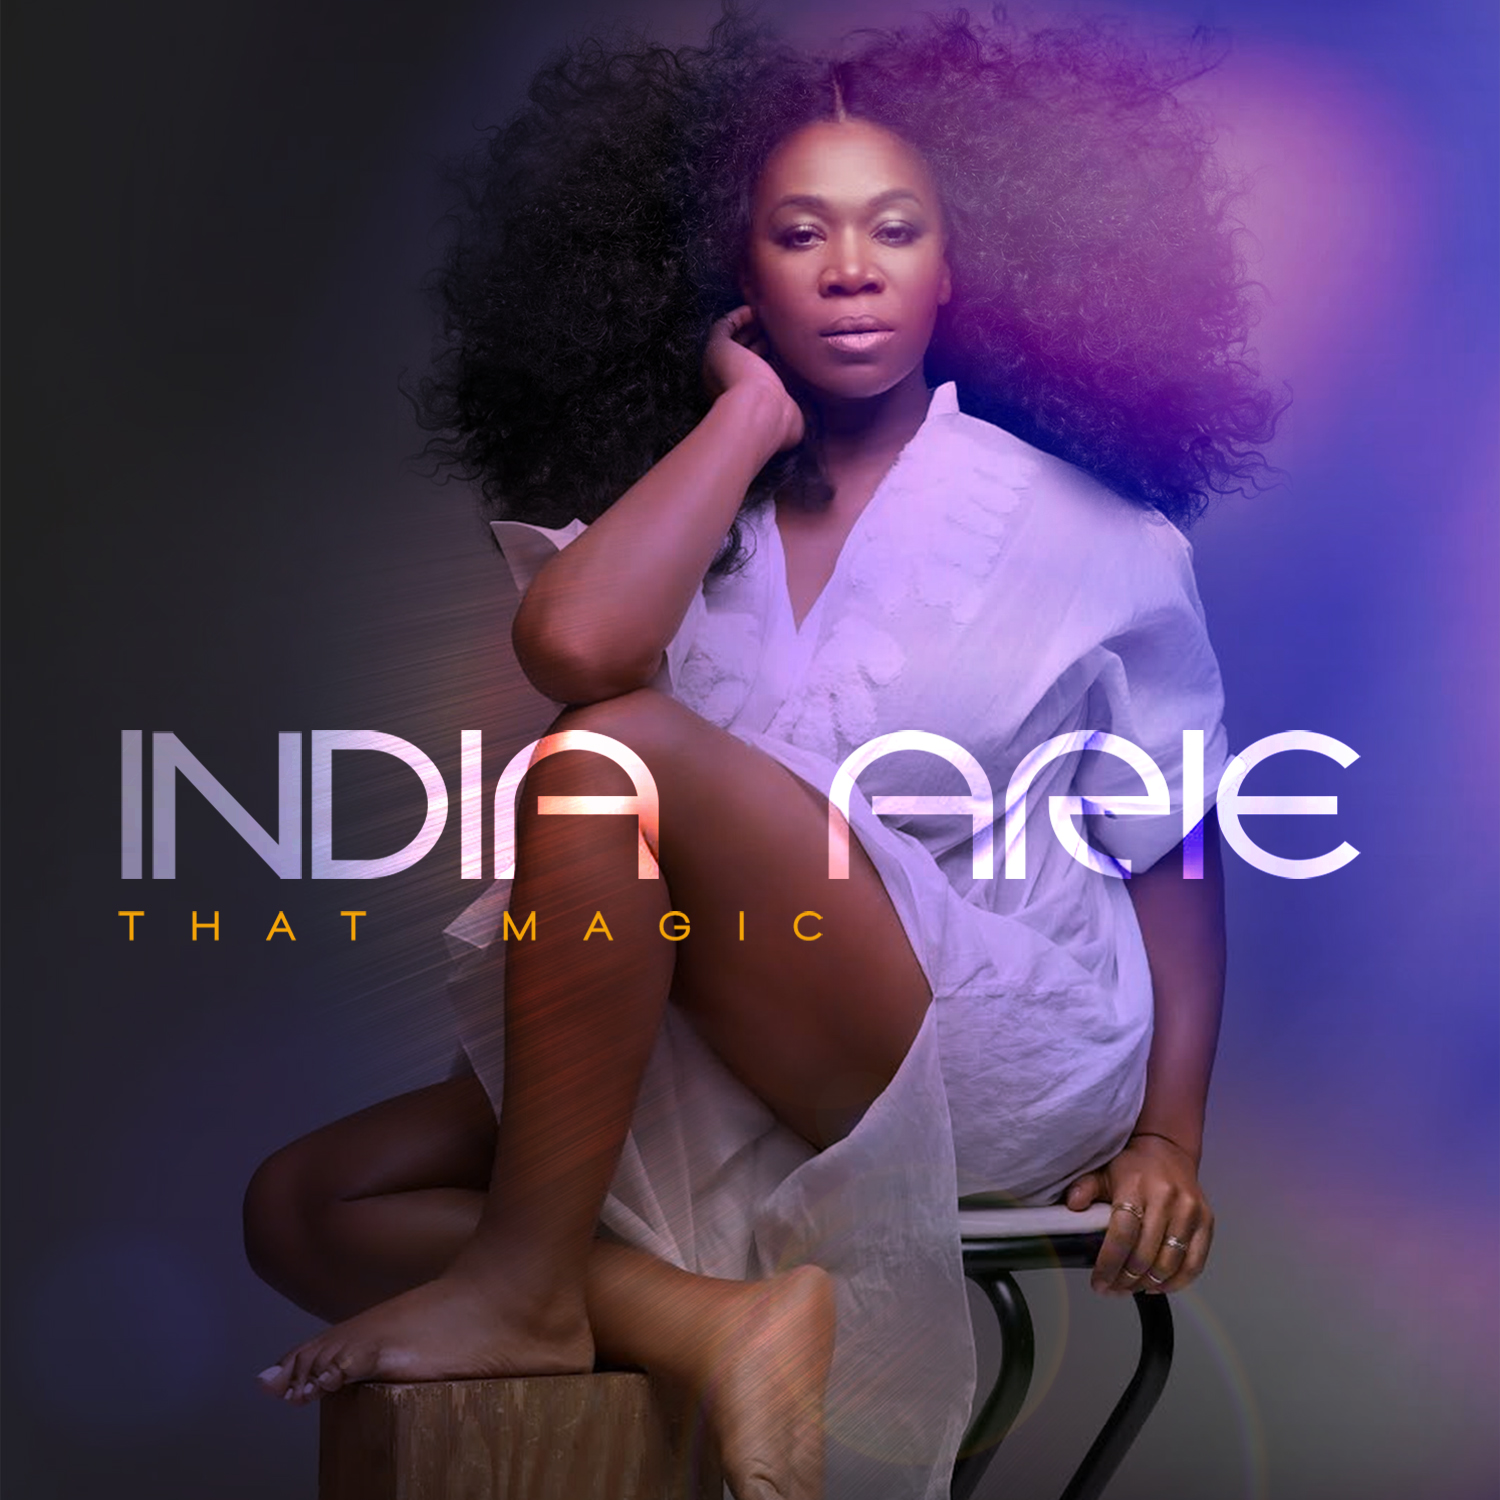 India.Arie "That Magic"